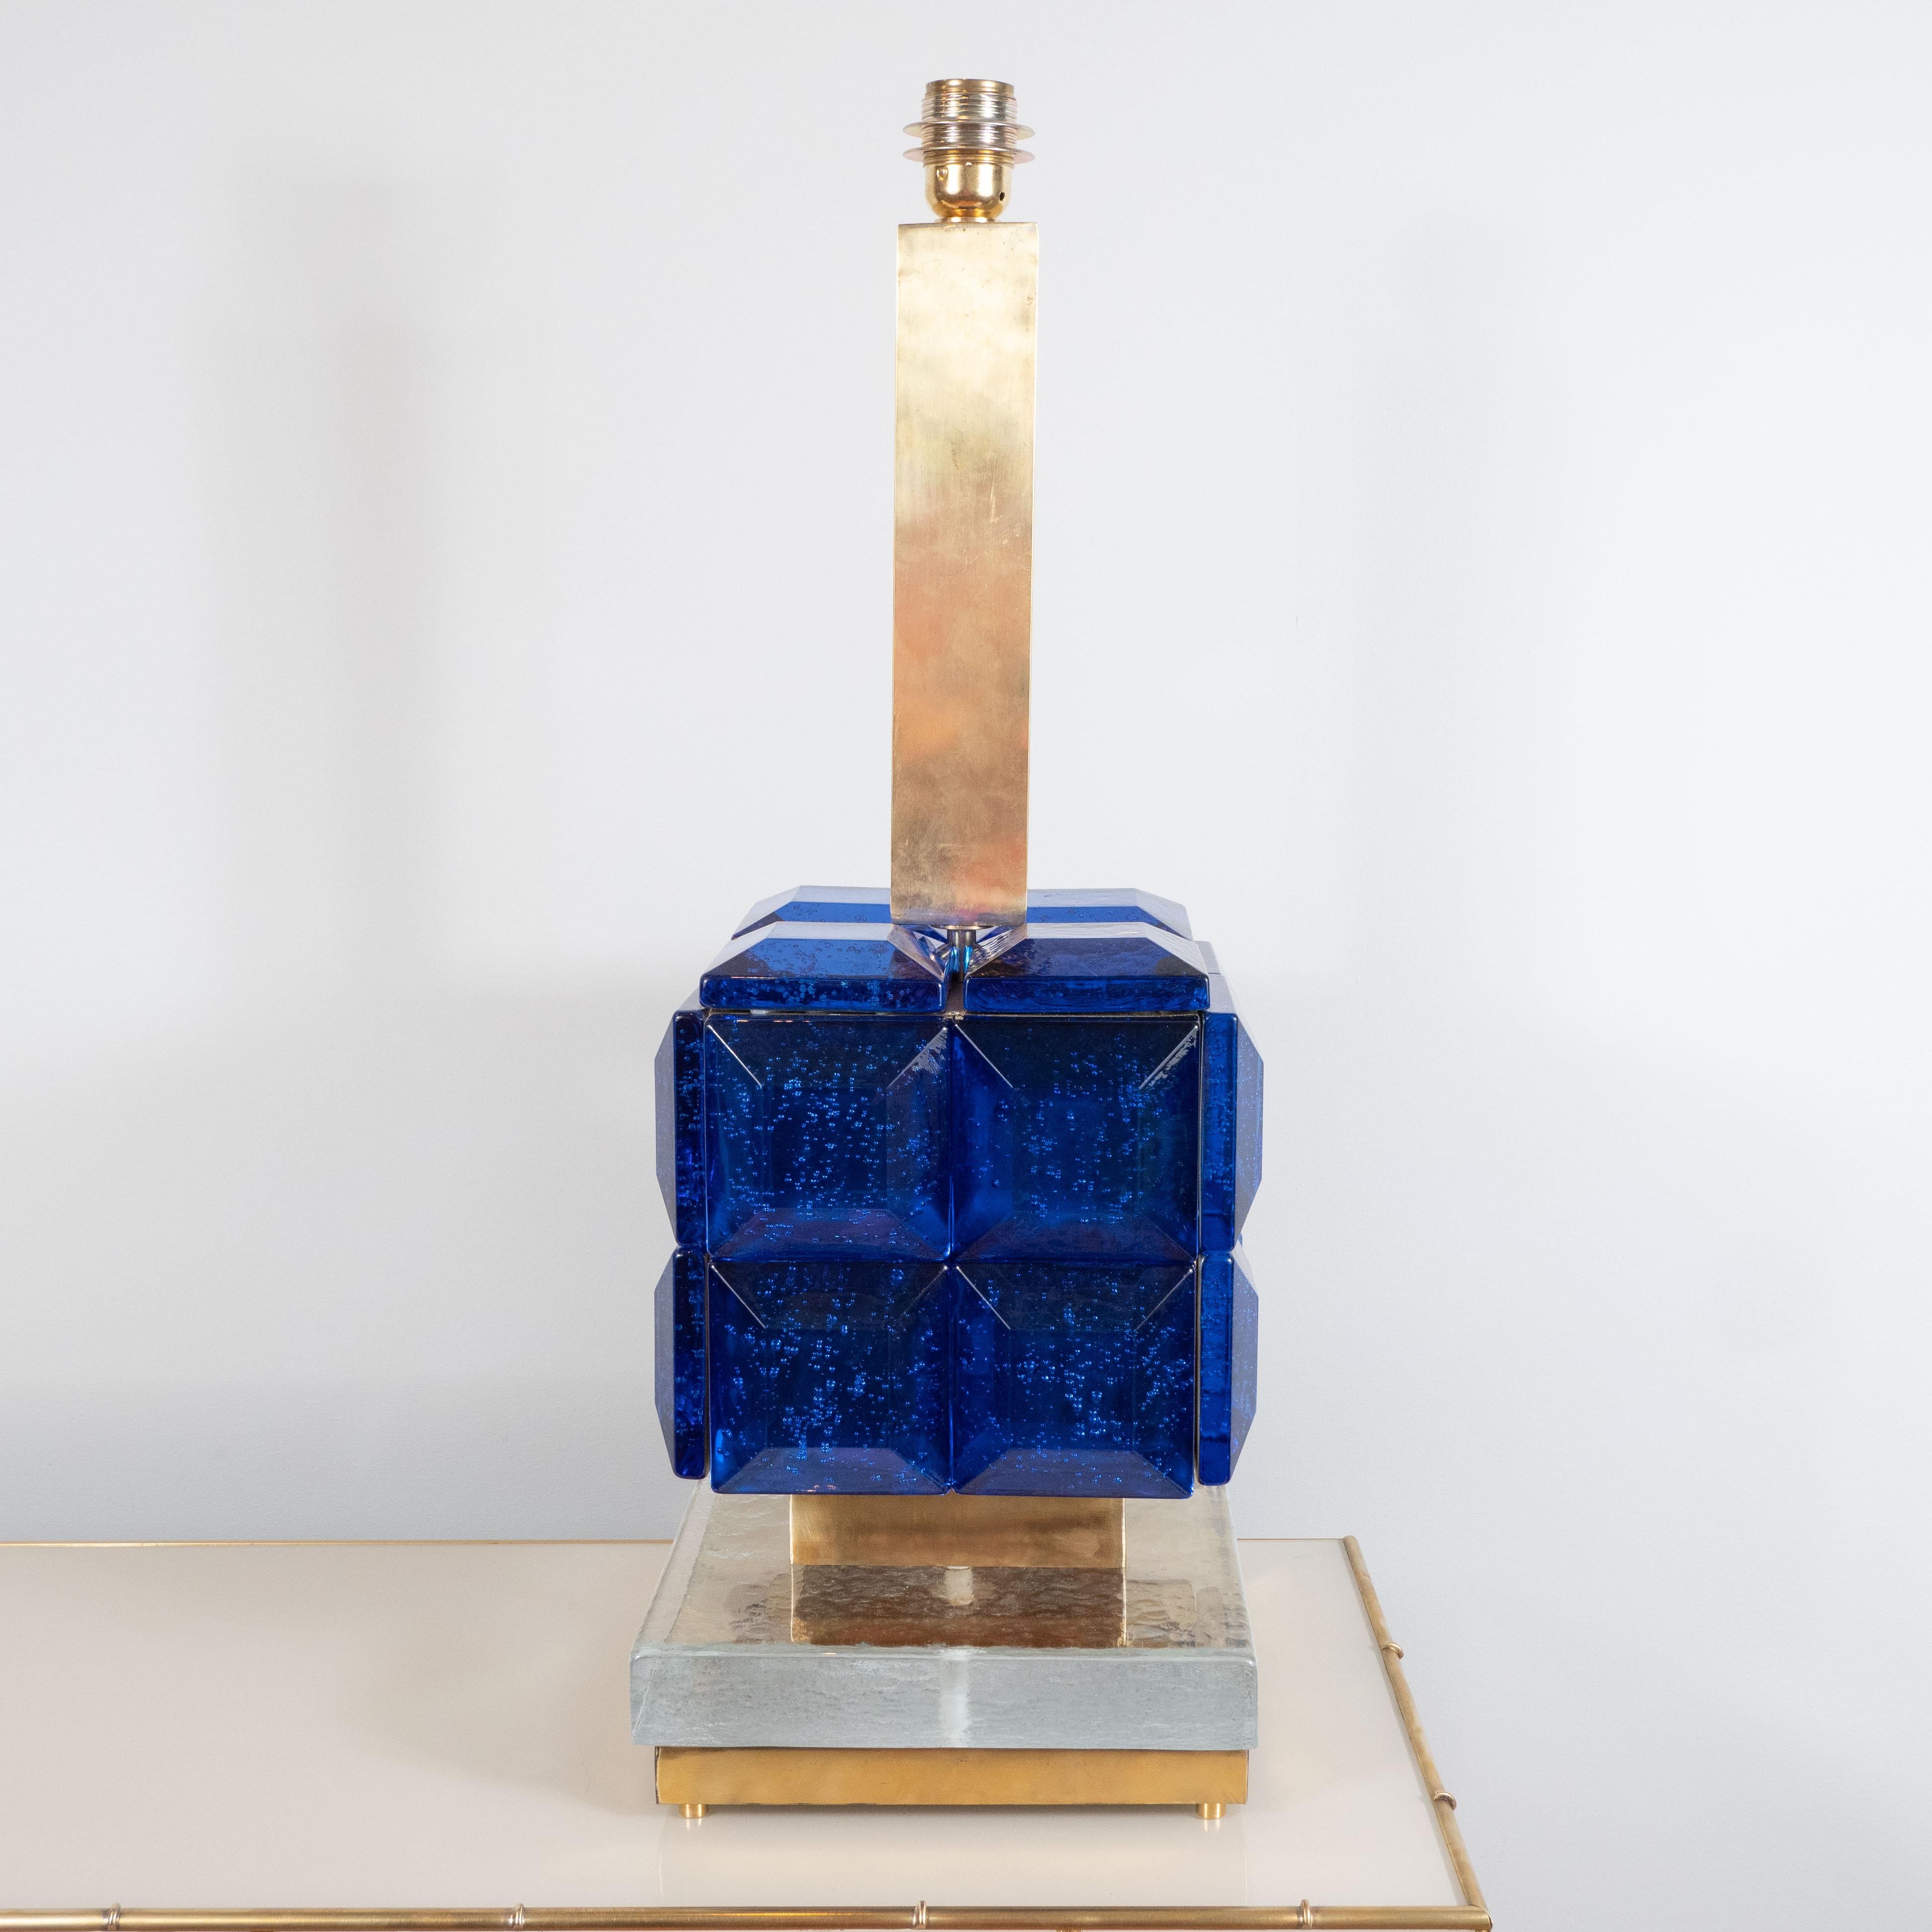 Dieses große Lampenpaar besteht aus kobaltblauen quadratischen Muranoglasblöcken:: die in einer geometrischen Form auf einem klaren Muranoglasblock und einem quadratischen Sockel aus poliertem Messing angeordnet sind. Ein markantes und skulpturales